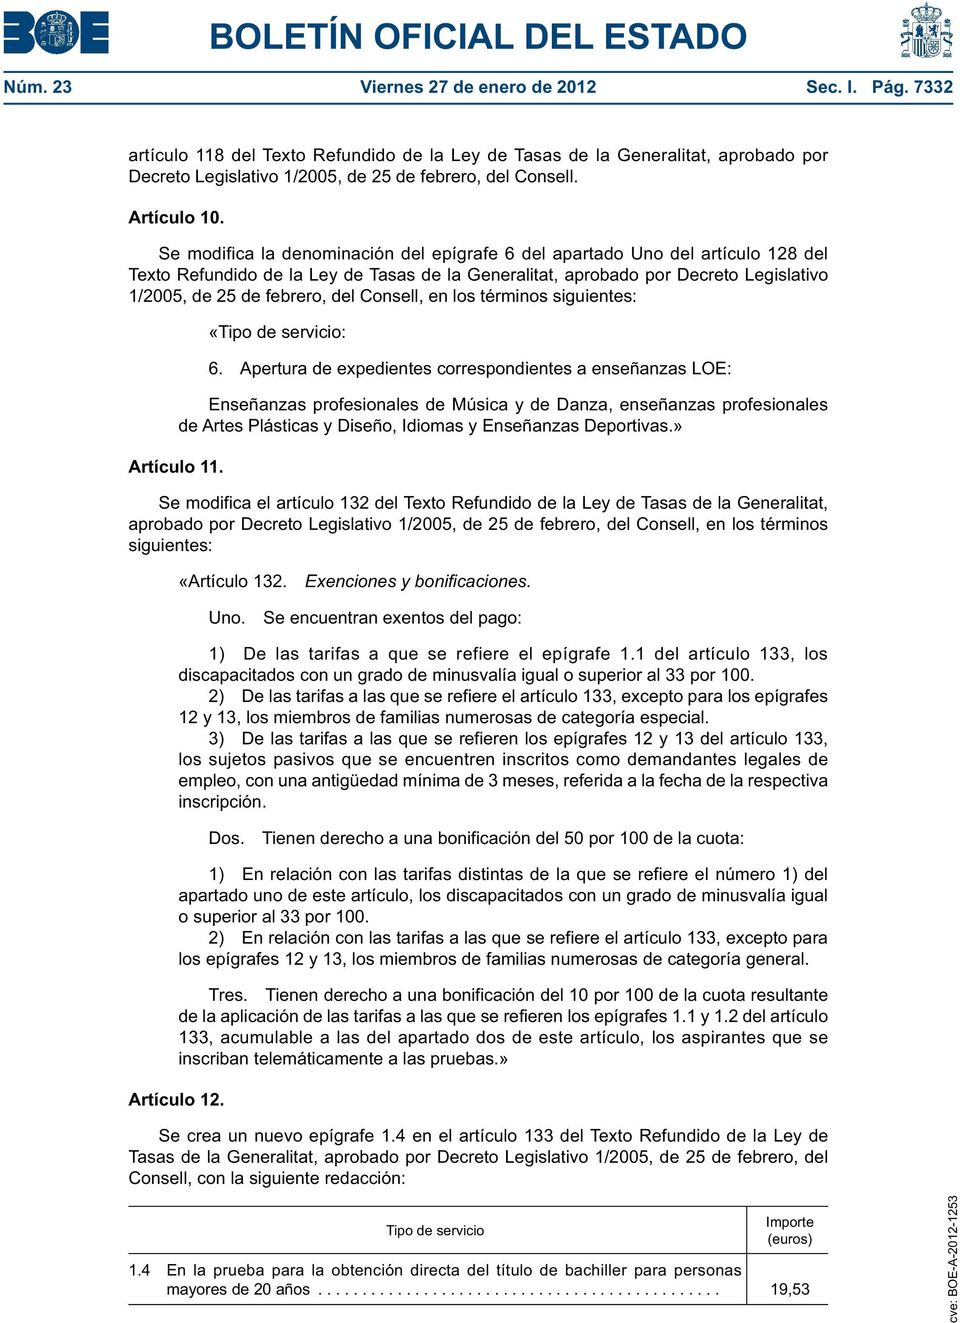 Se modifica la denominación del epígrafe 6 del apartado Uno del artículo 128 del Texto Refundido de la Ley de Tasas de la Generalitat, aprobado por Decreto Legislativo 1/2005, de 25 de febrero, del